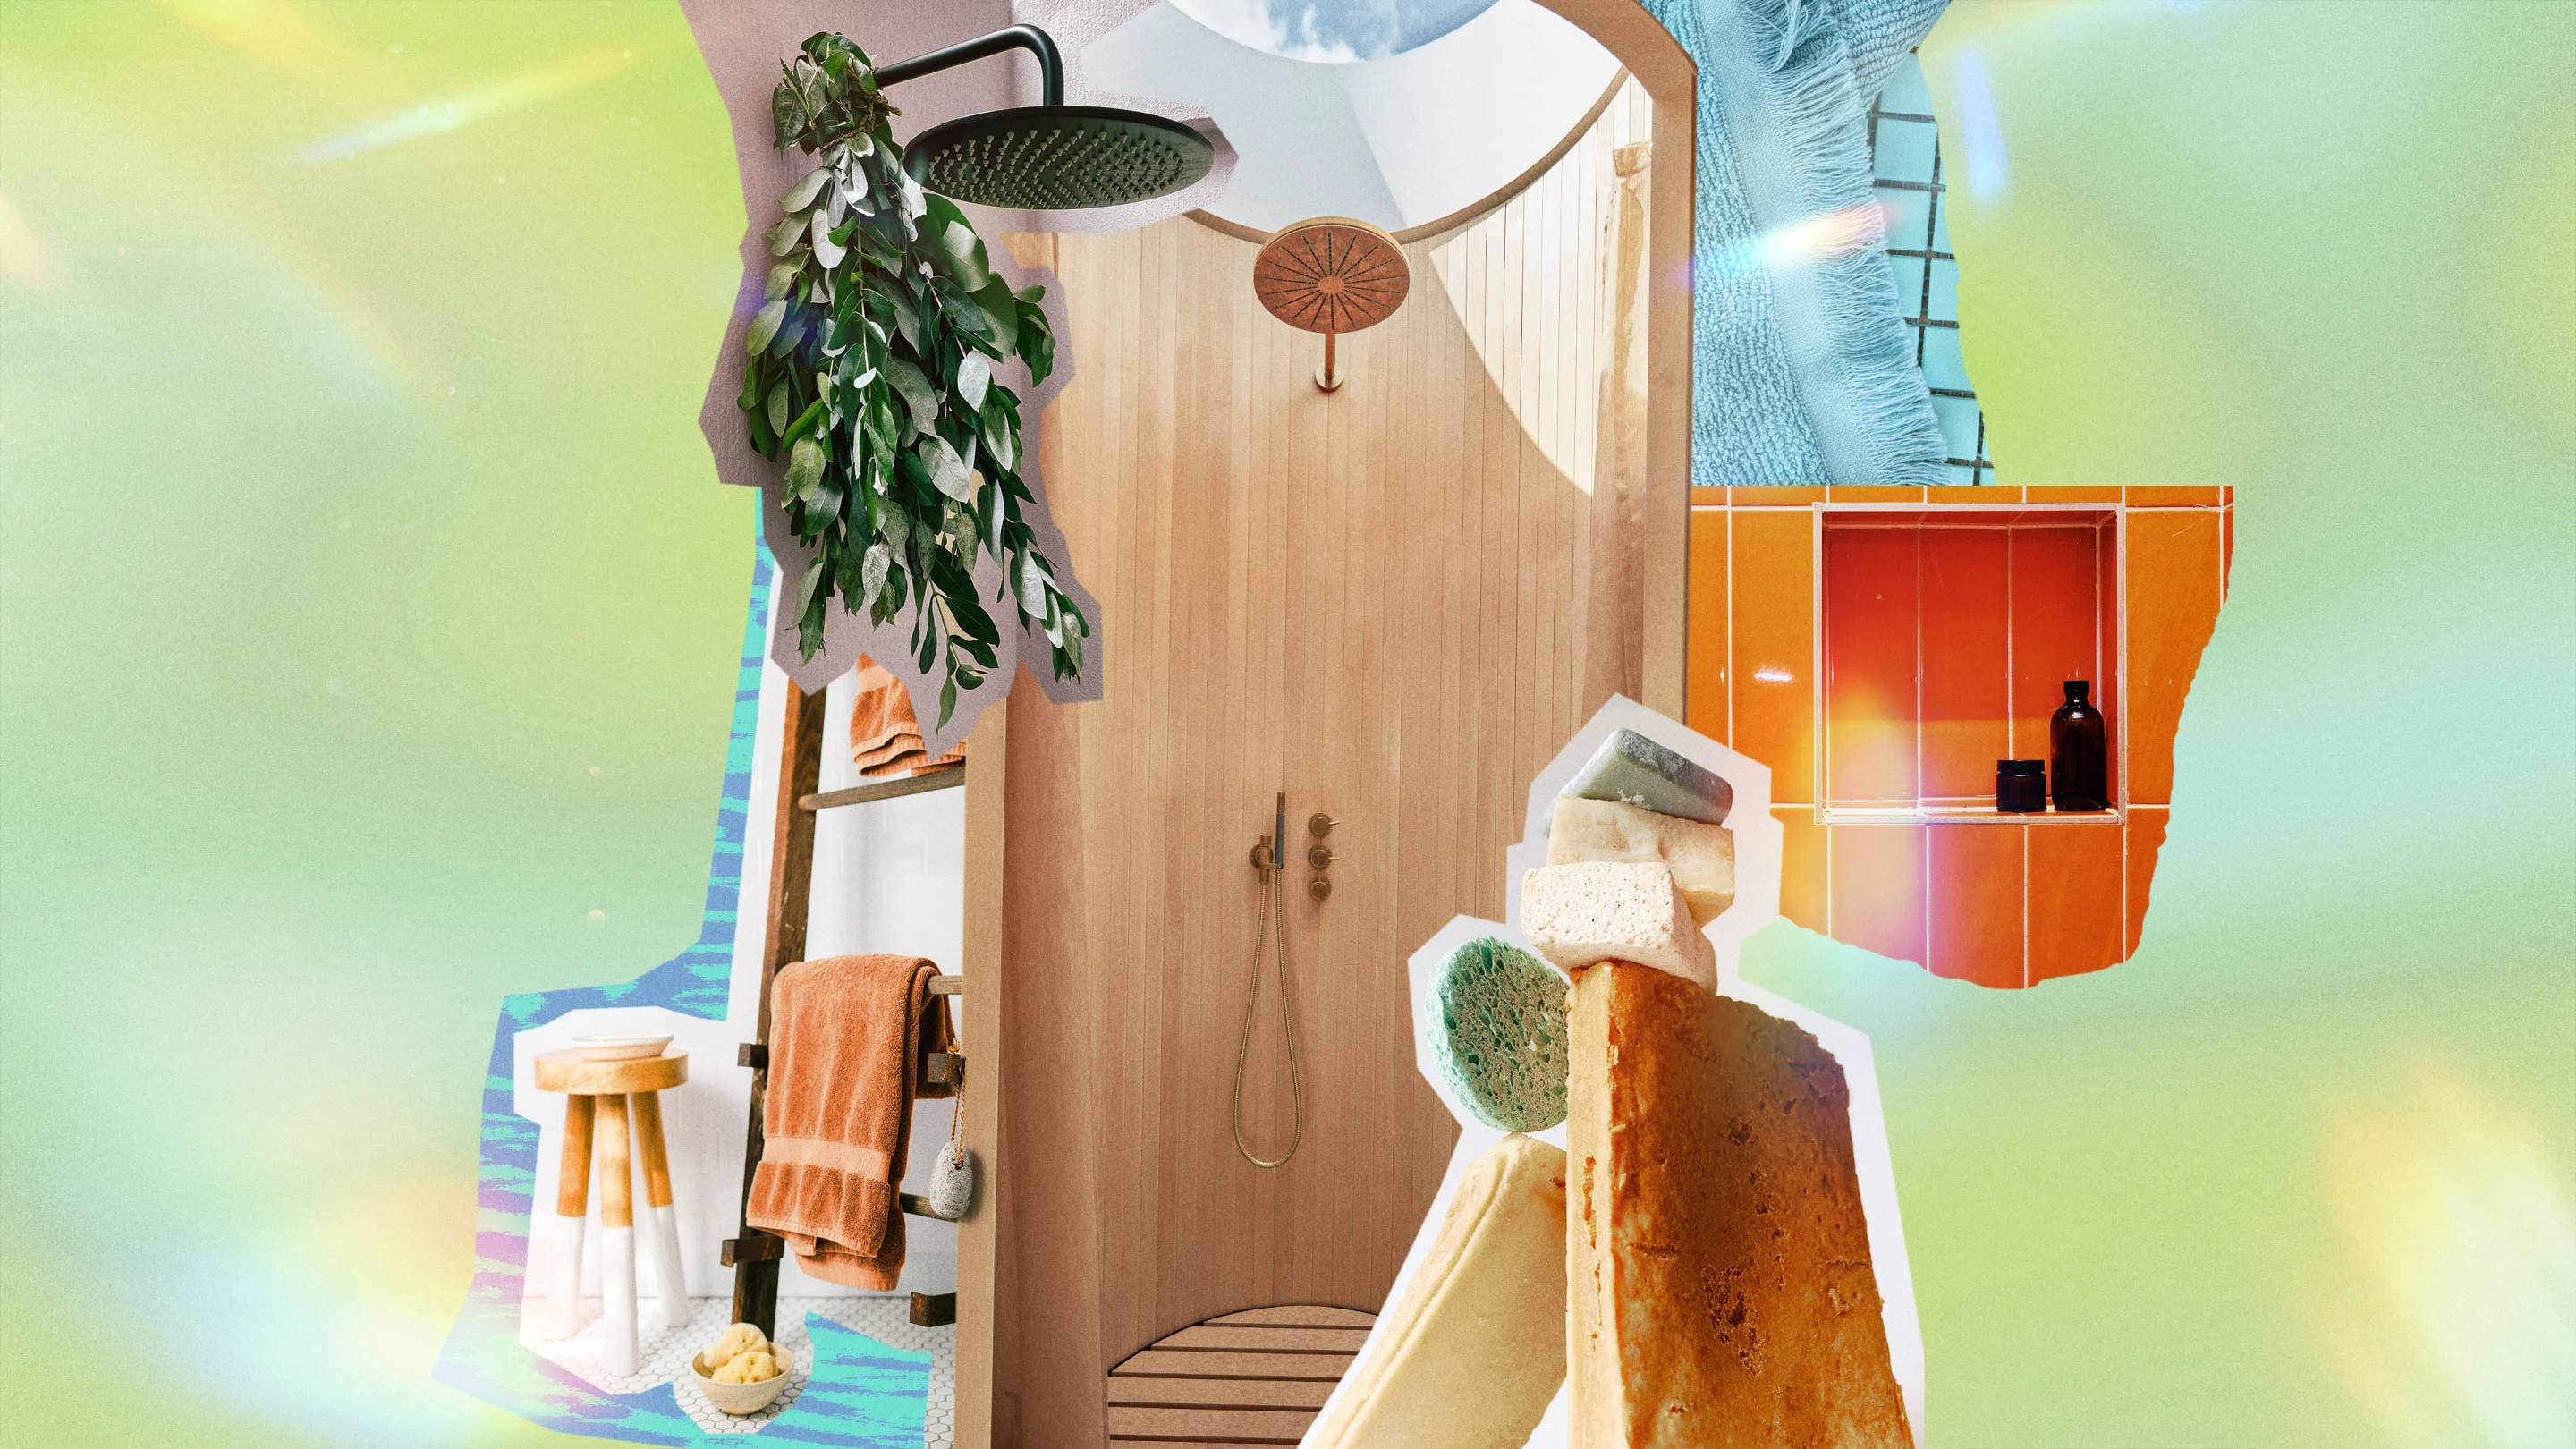 Collage con una ducha al centro, hojas de eucalipto que cuelgan de un cabezal de ducha, varias esponjas, toallas que cuelgan de una escalera y productos para la ducha.